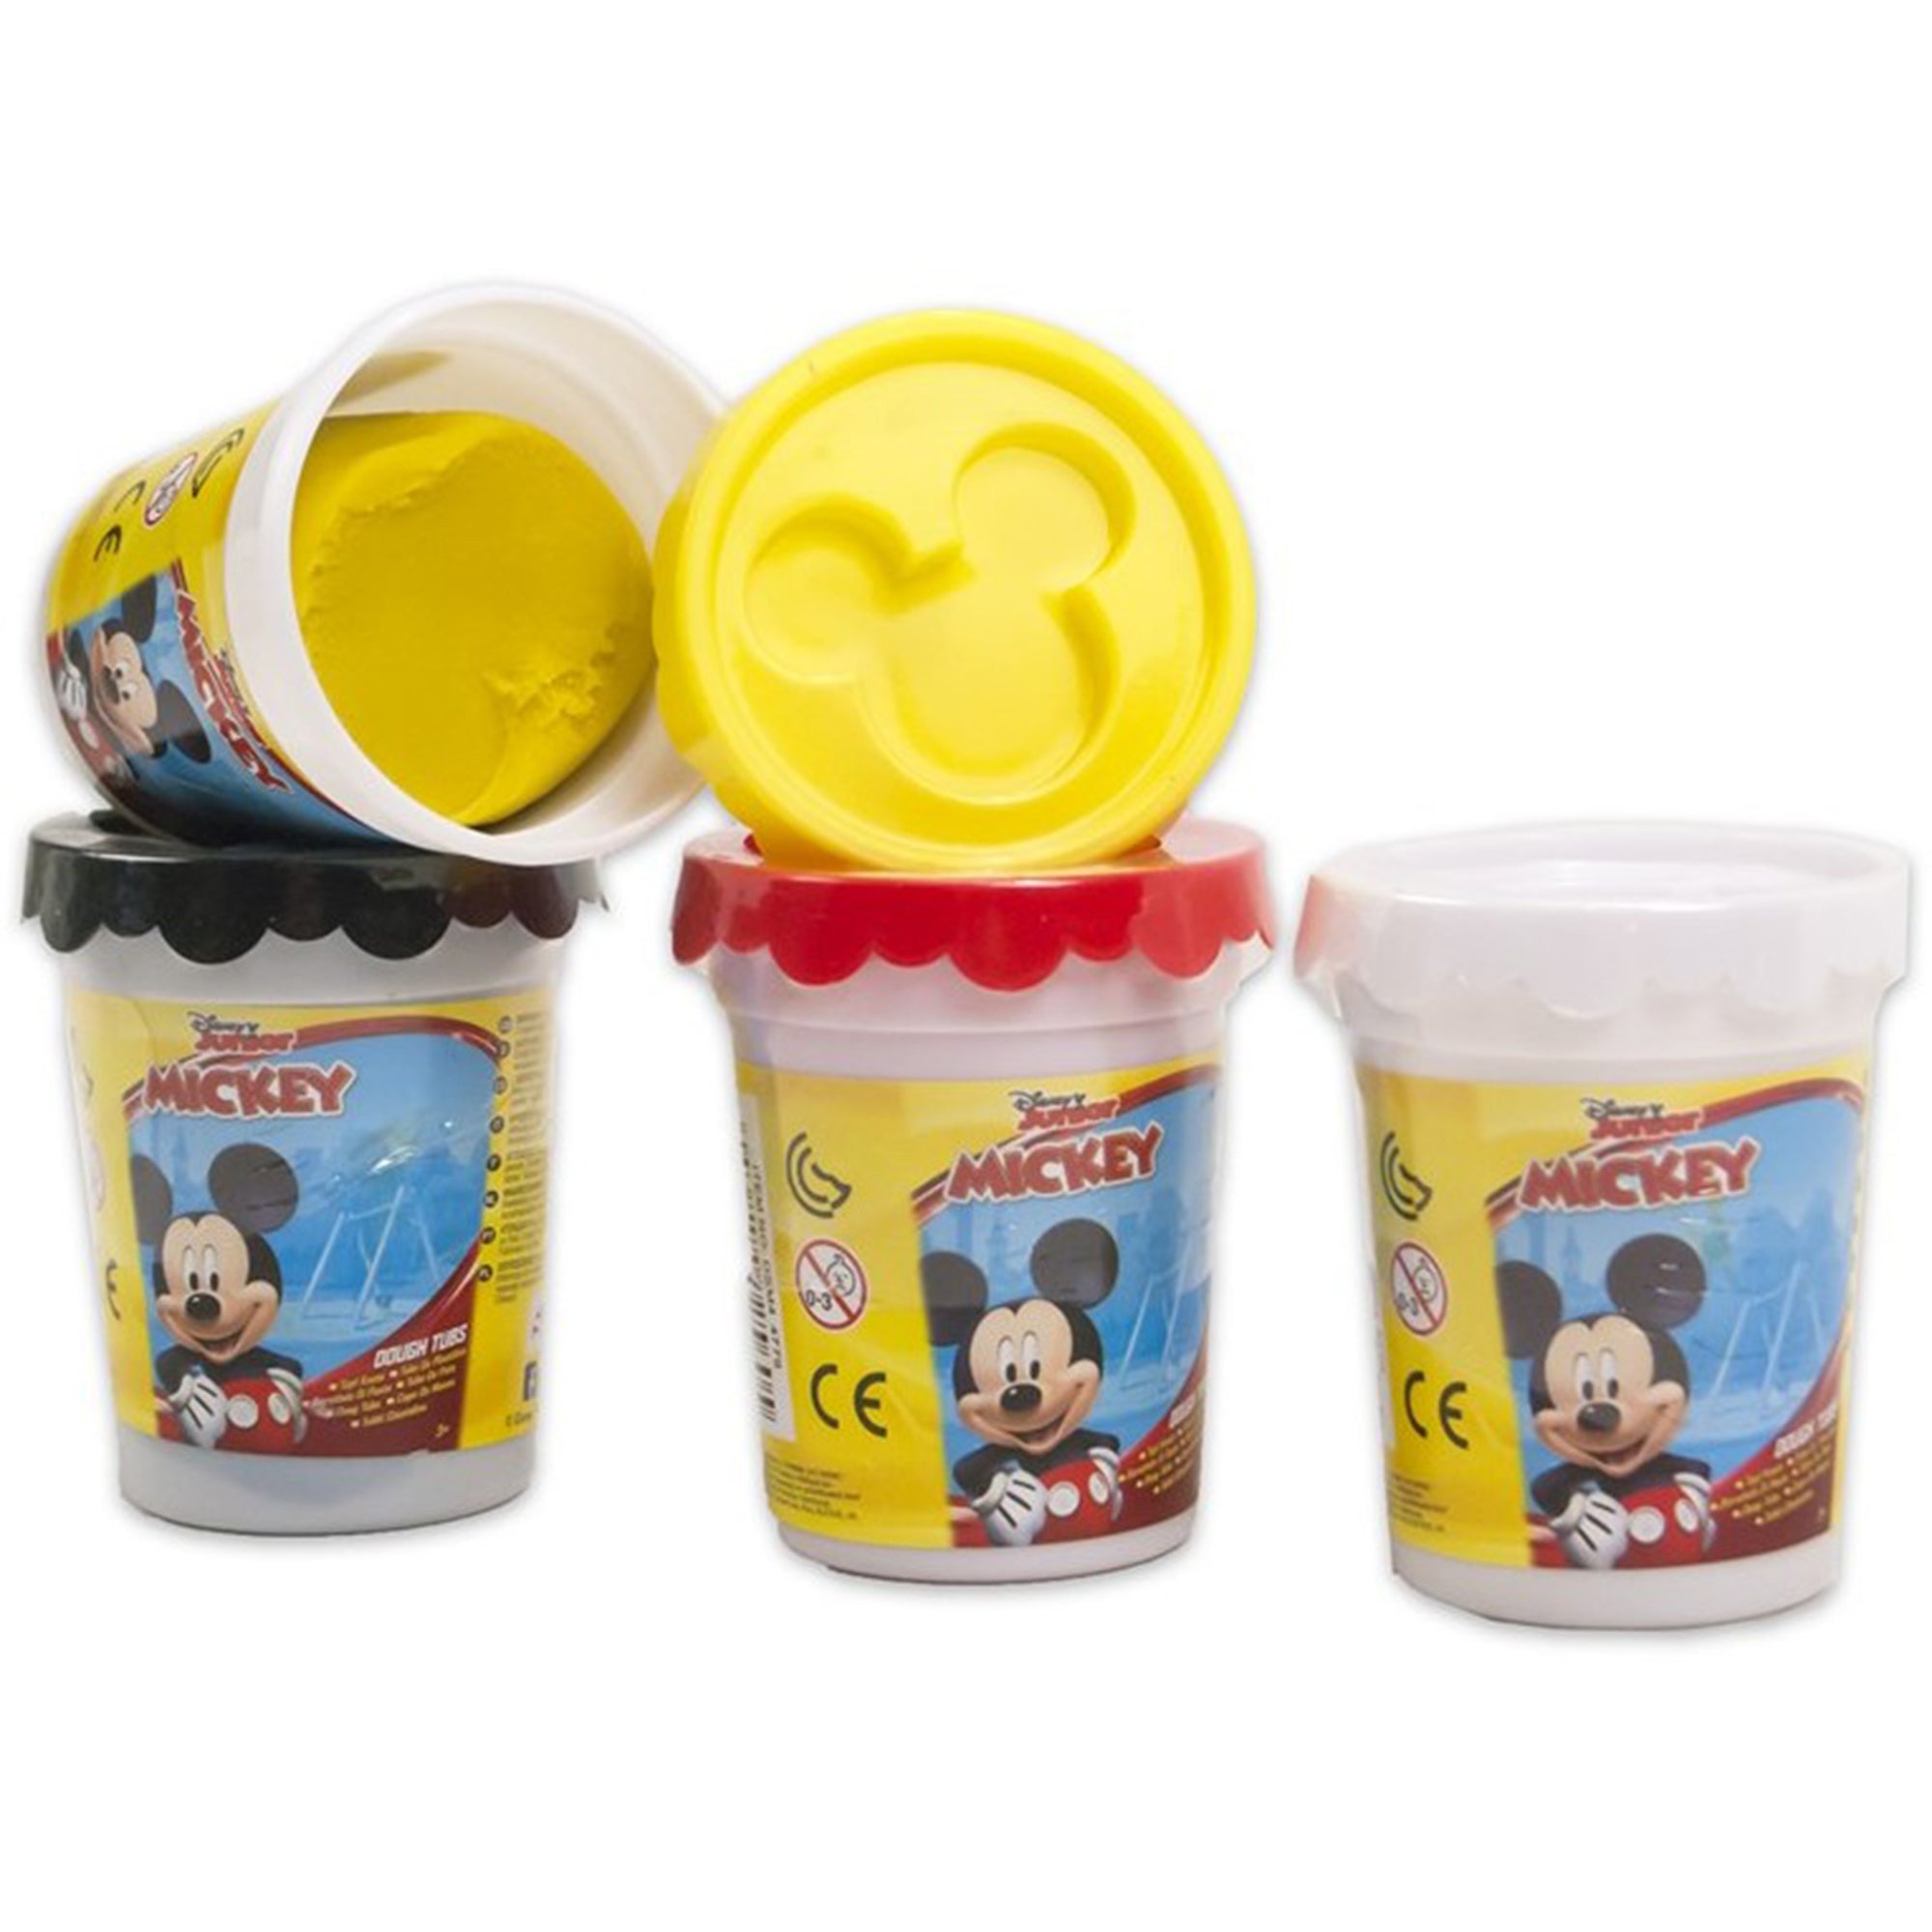 Plastilina Disney Mickey Mouse bambini 4 vasetti pasta modellante colorata 2743